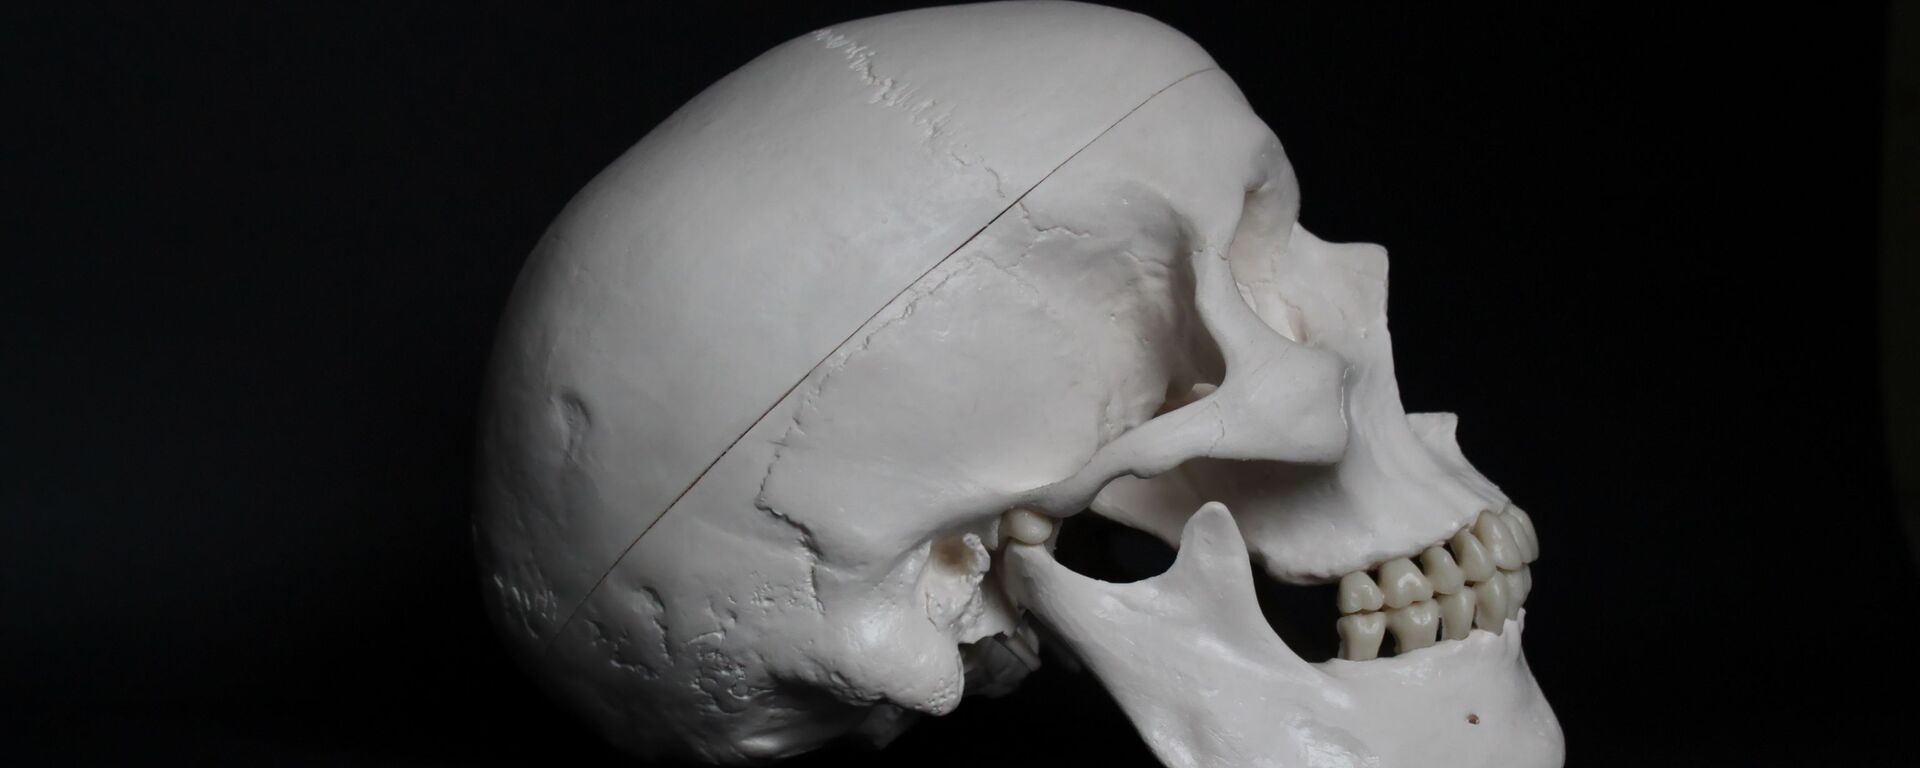 Un cráneo humano (archivo) - Sputnik Mundo, 1920, 27.05.2021